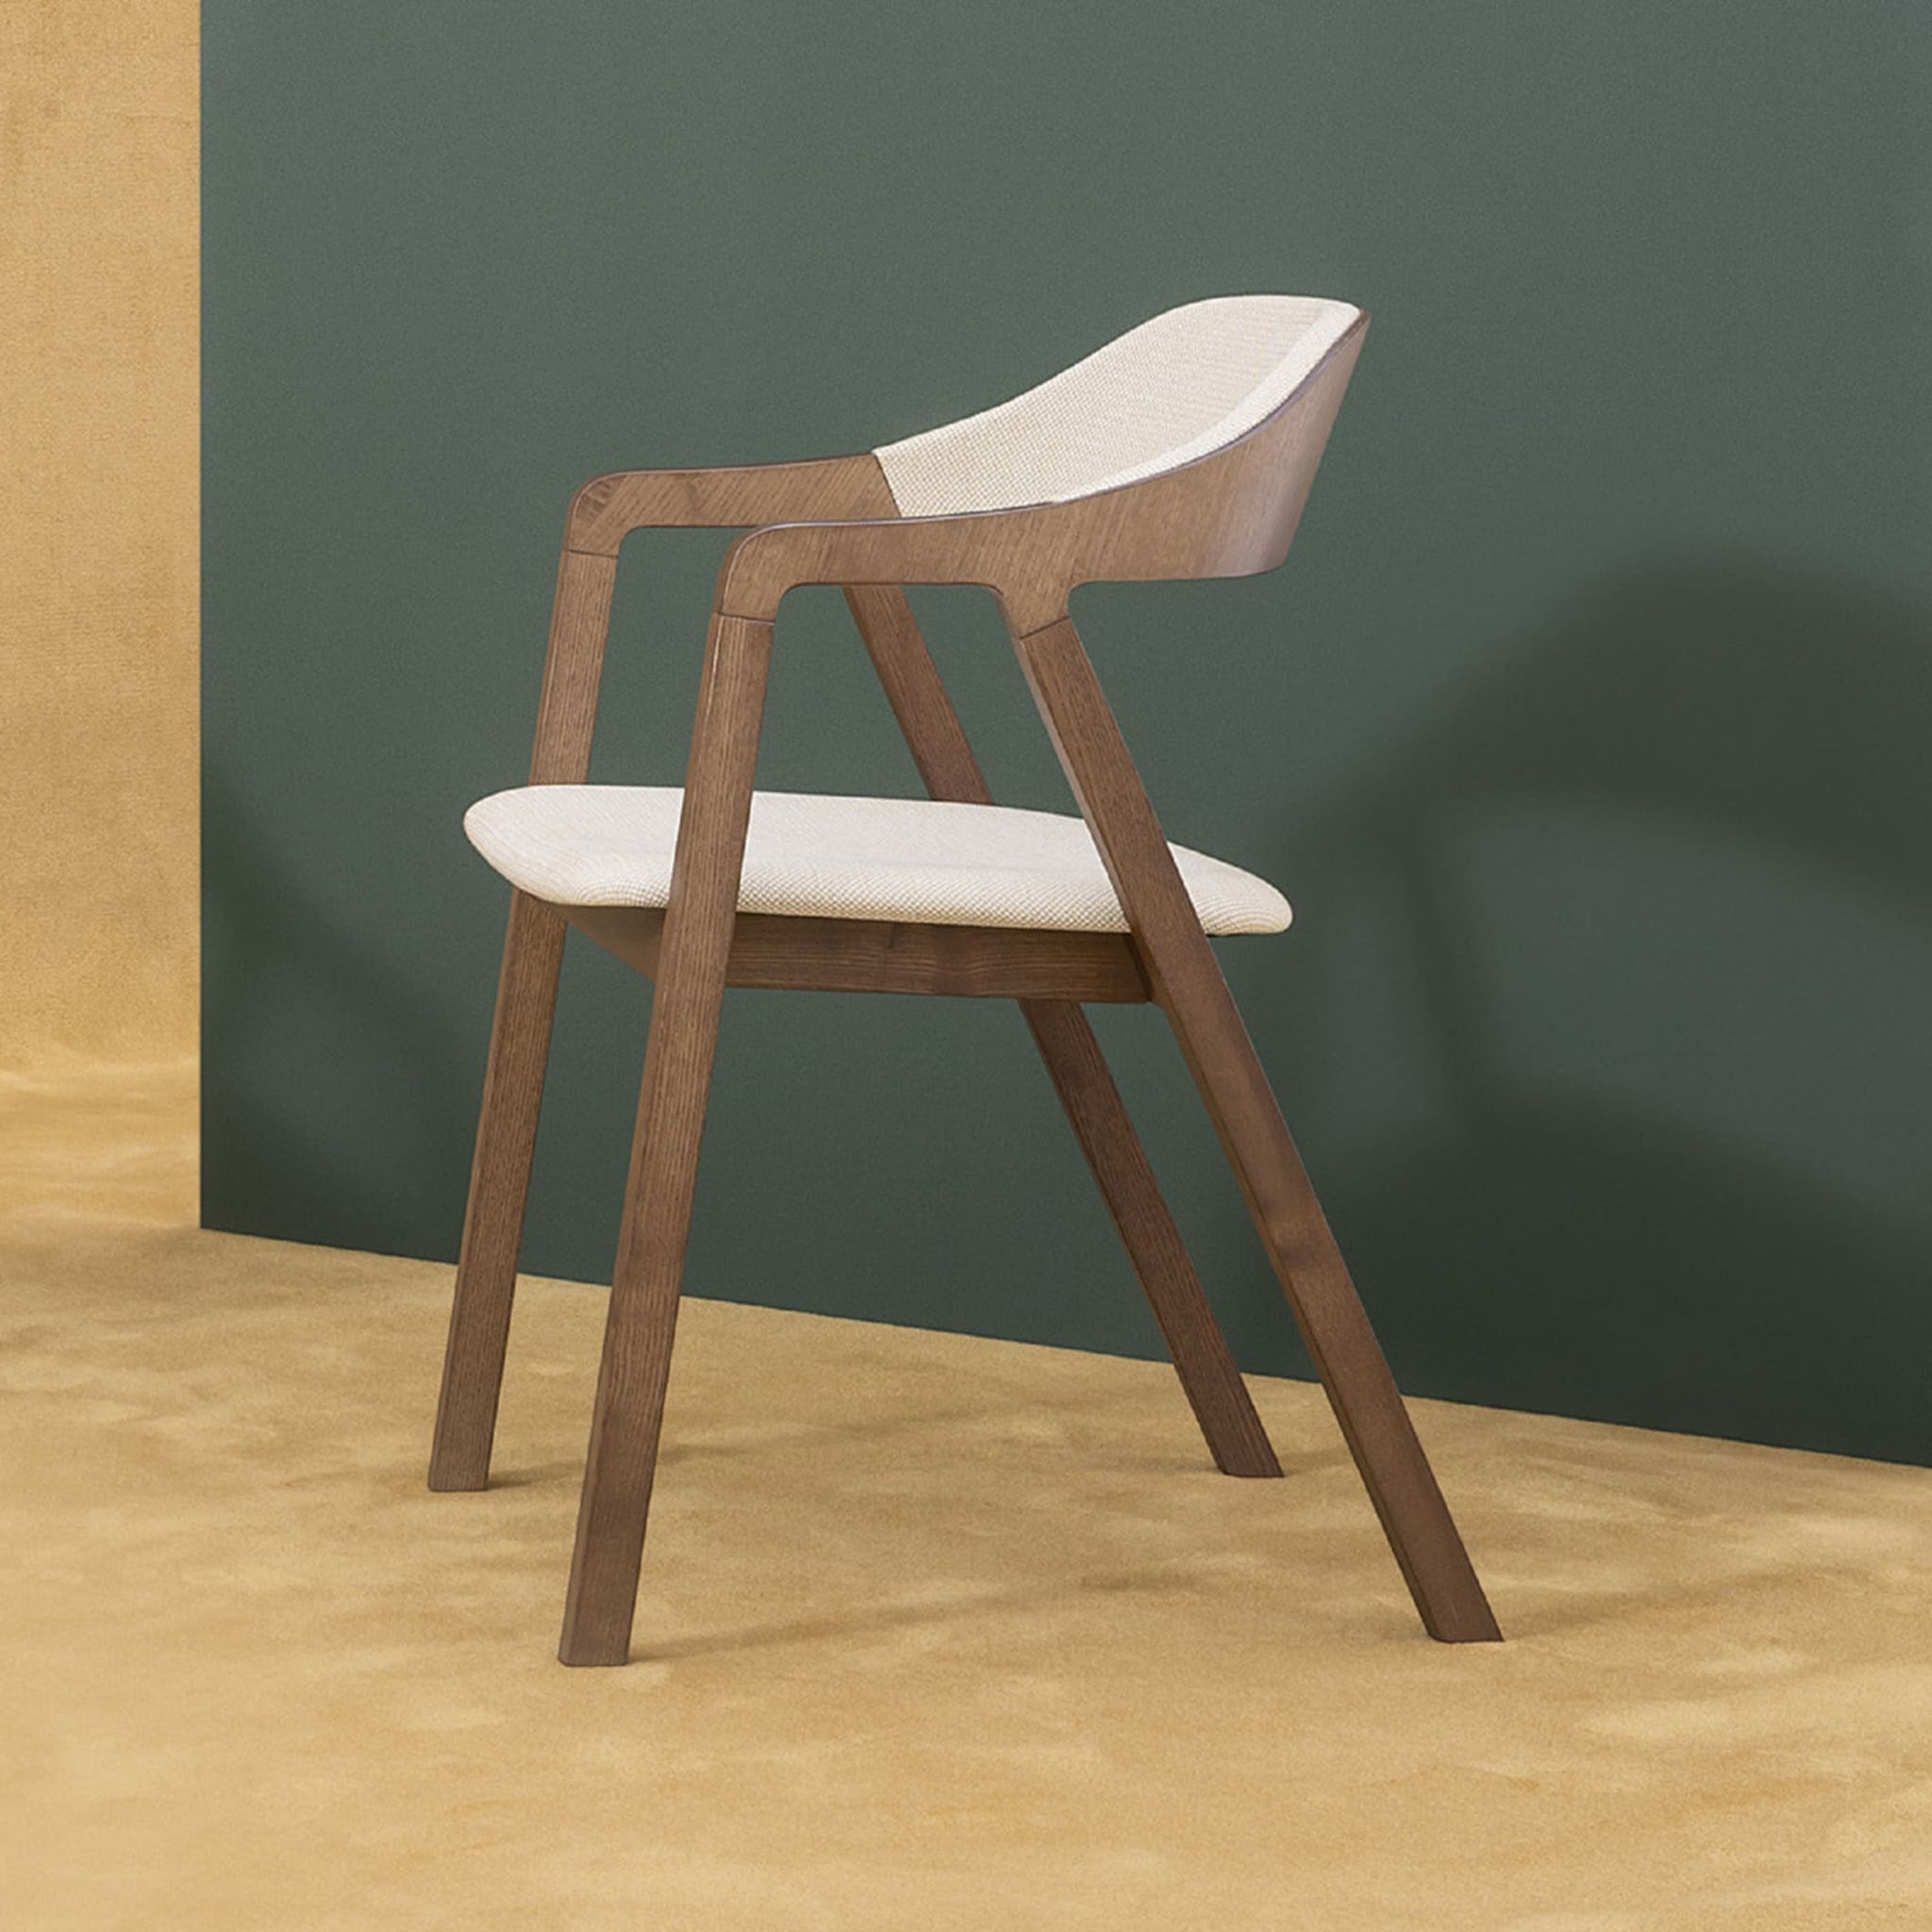 Layer Chair by Michael Geldmacher - Alternative view 2